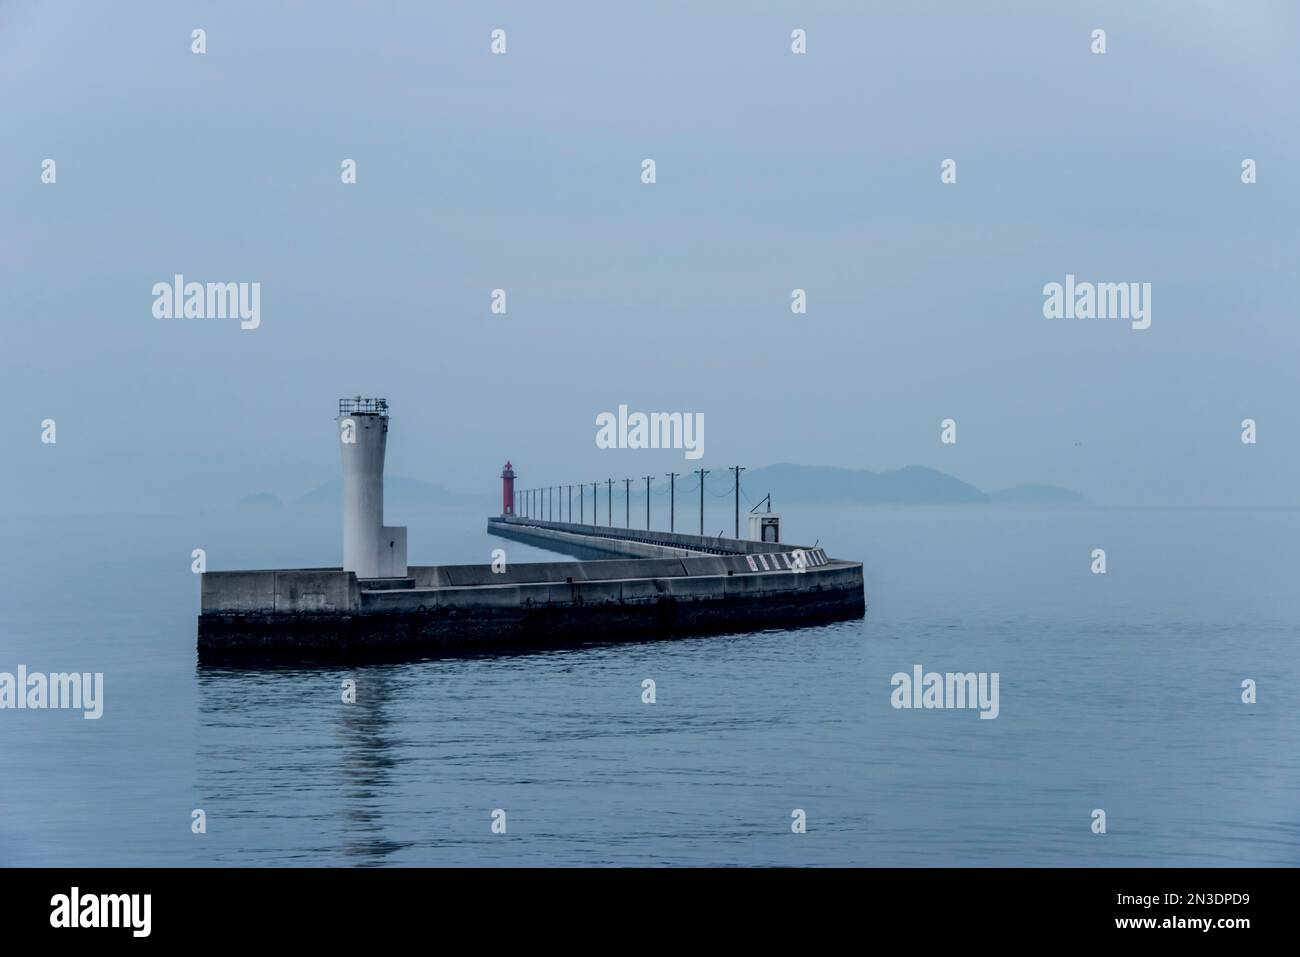 Structure de rupture d'eau et phare dans le port près de Naoshima, une ville insulaire dans la mer intérieure de Seto au Japon ; Shikoku, Japon Banque D'Images